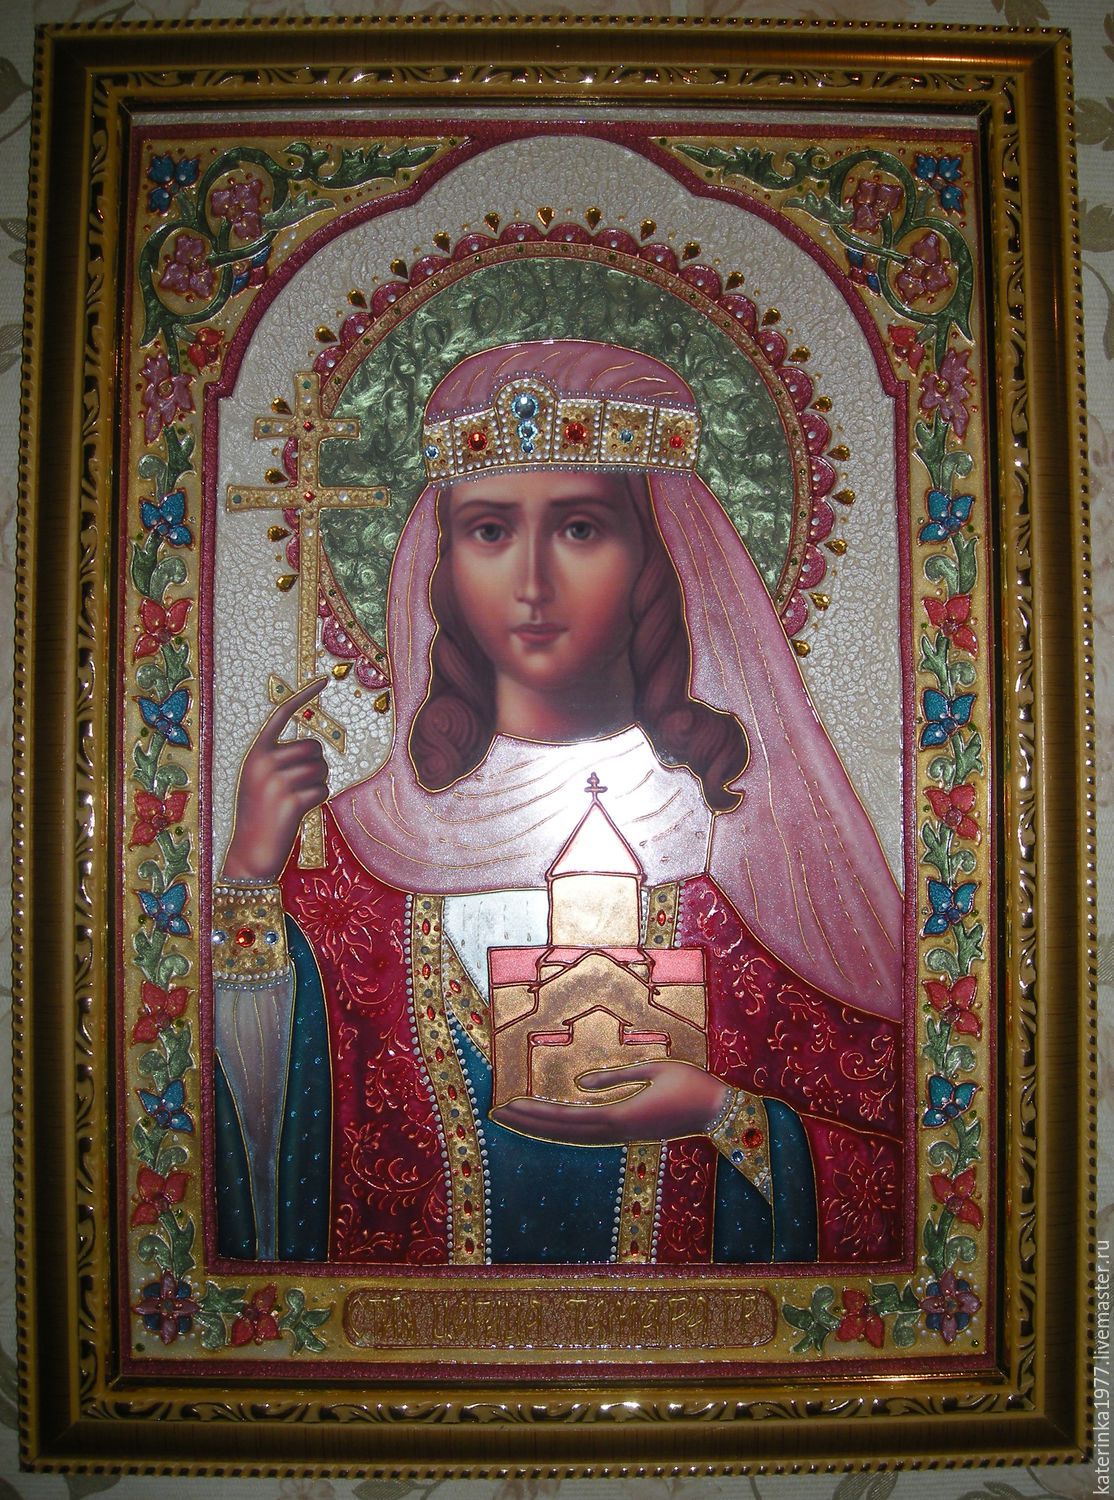 Икона царицы тамары грузинской фото